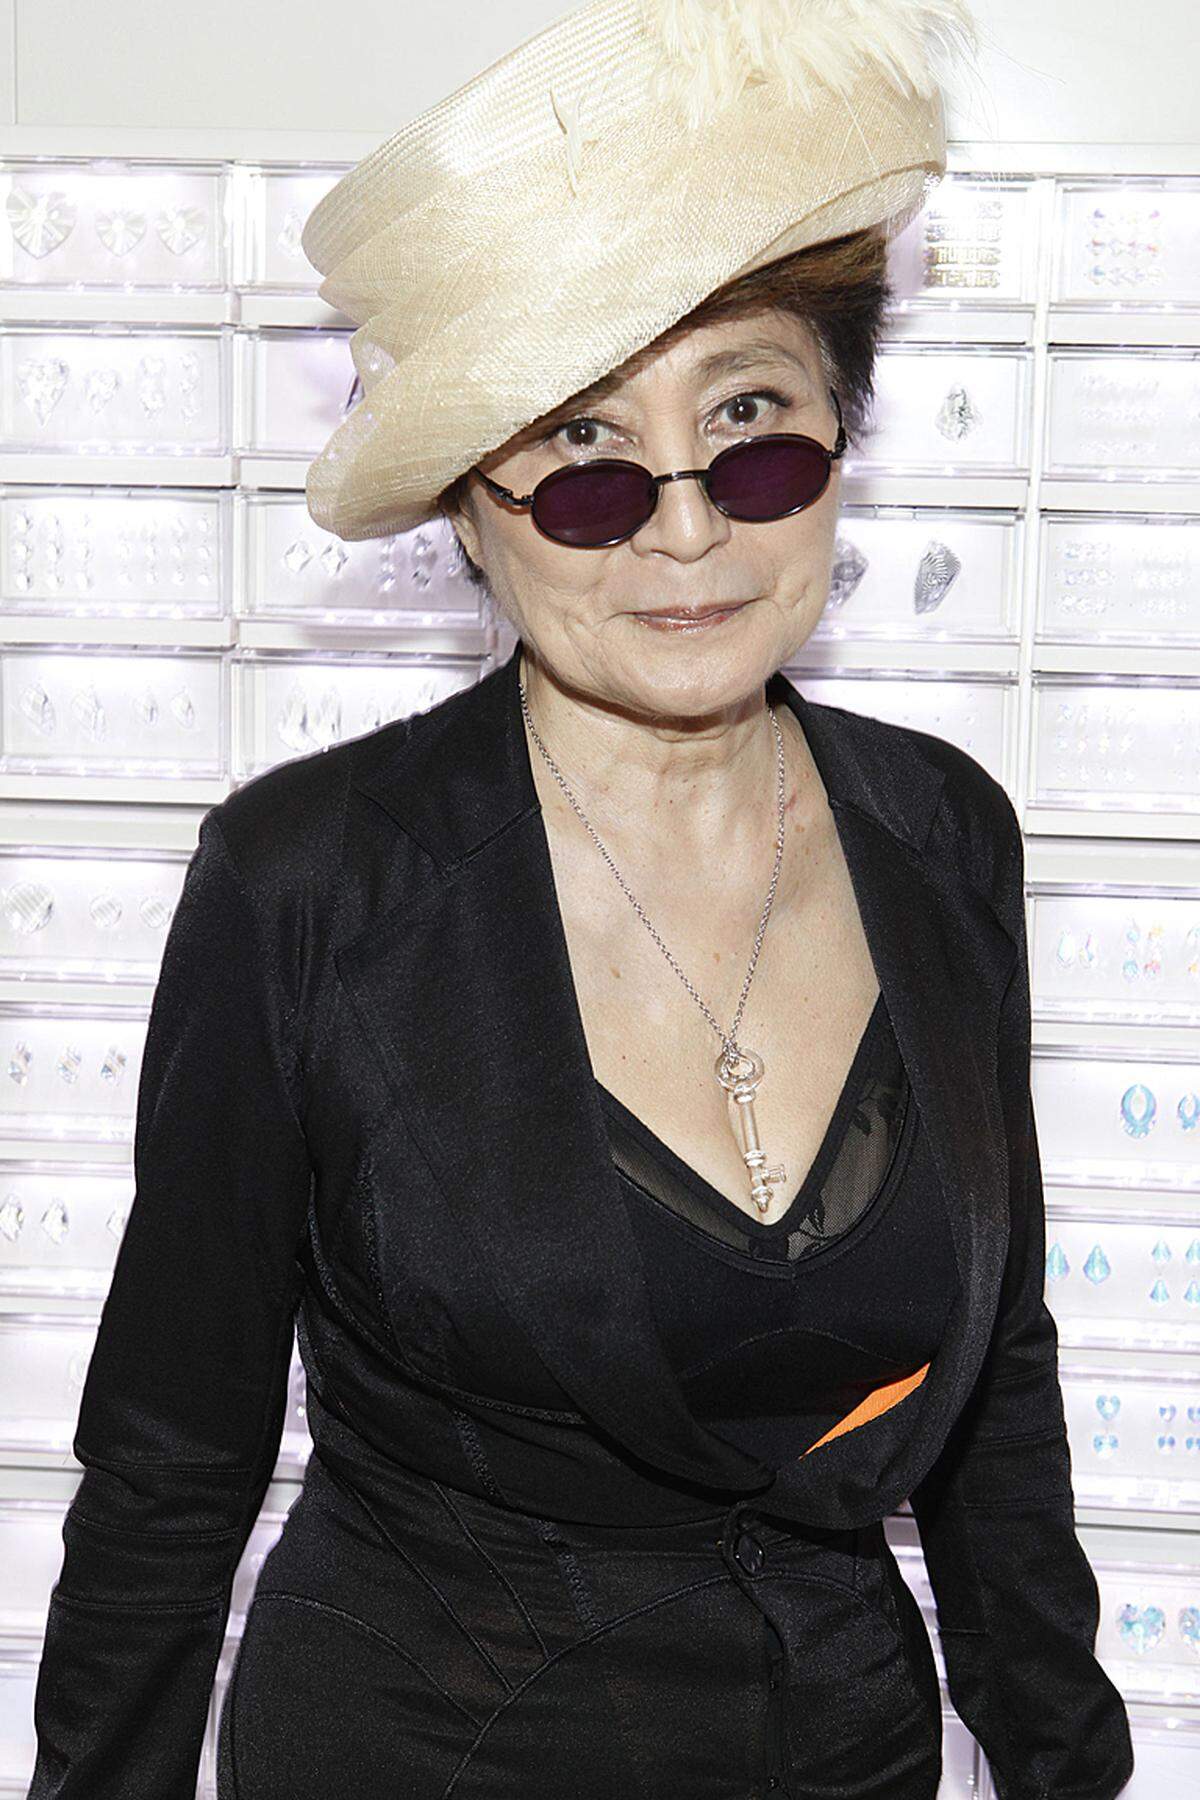 ... zur Präsentation ihrer Kollaboration mit der Luxusmarke Swarovski.Vor kurzem wurde ihre neue Männerkollektion vorgestellt. Yoko Ono wurde dabei nach eigener Aussage von Skizzen ihres verstorbenen Mannes John Lennon inspiriert.